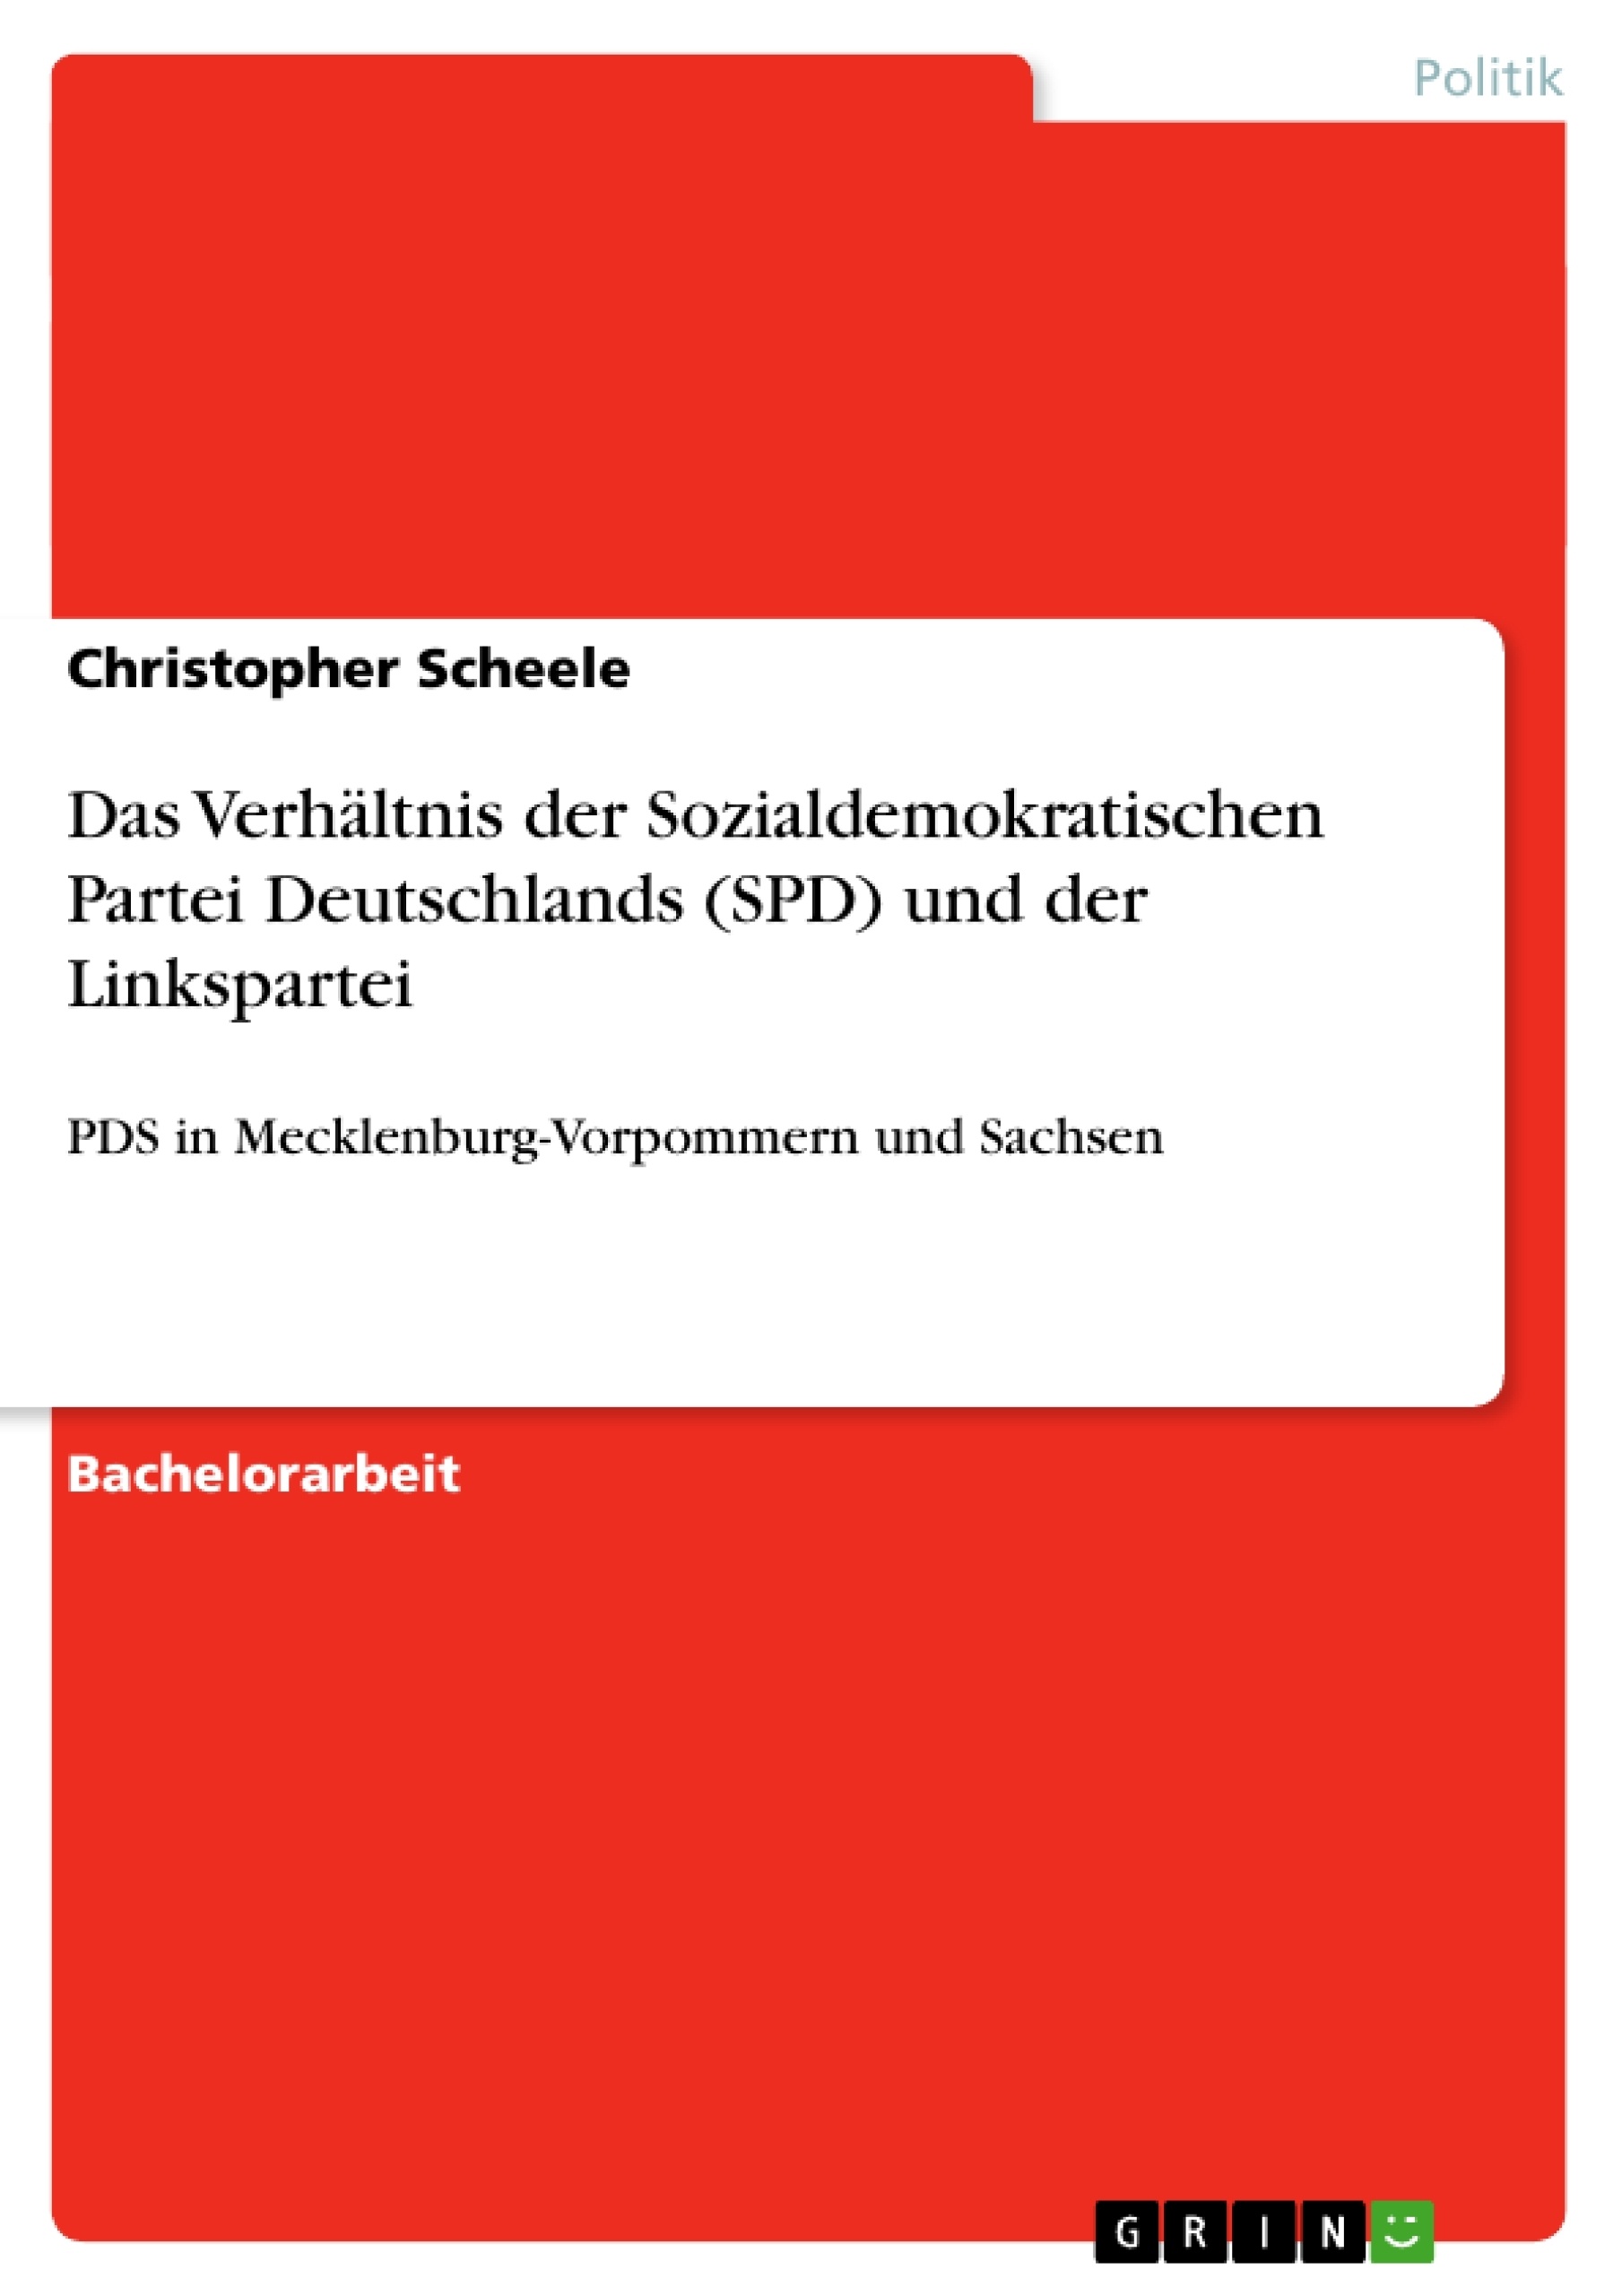 Titel: Das Verhältnis der Sozialdemokratischen Partei Deutschlands (SPD) und der Linkspartei